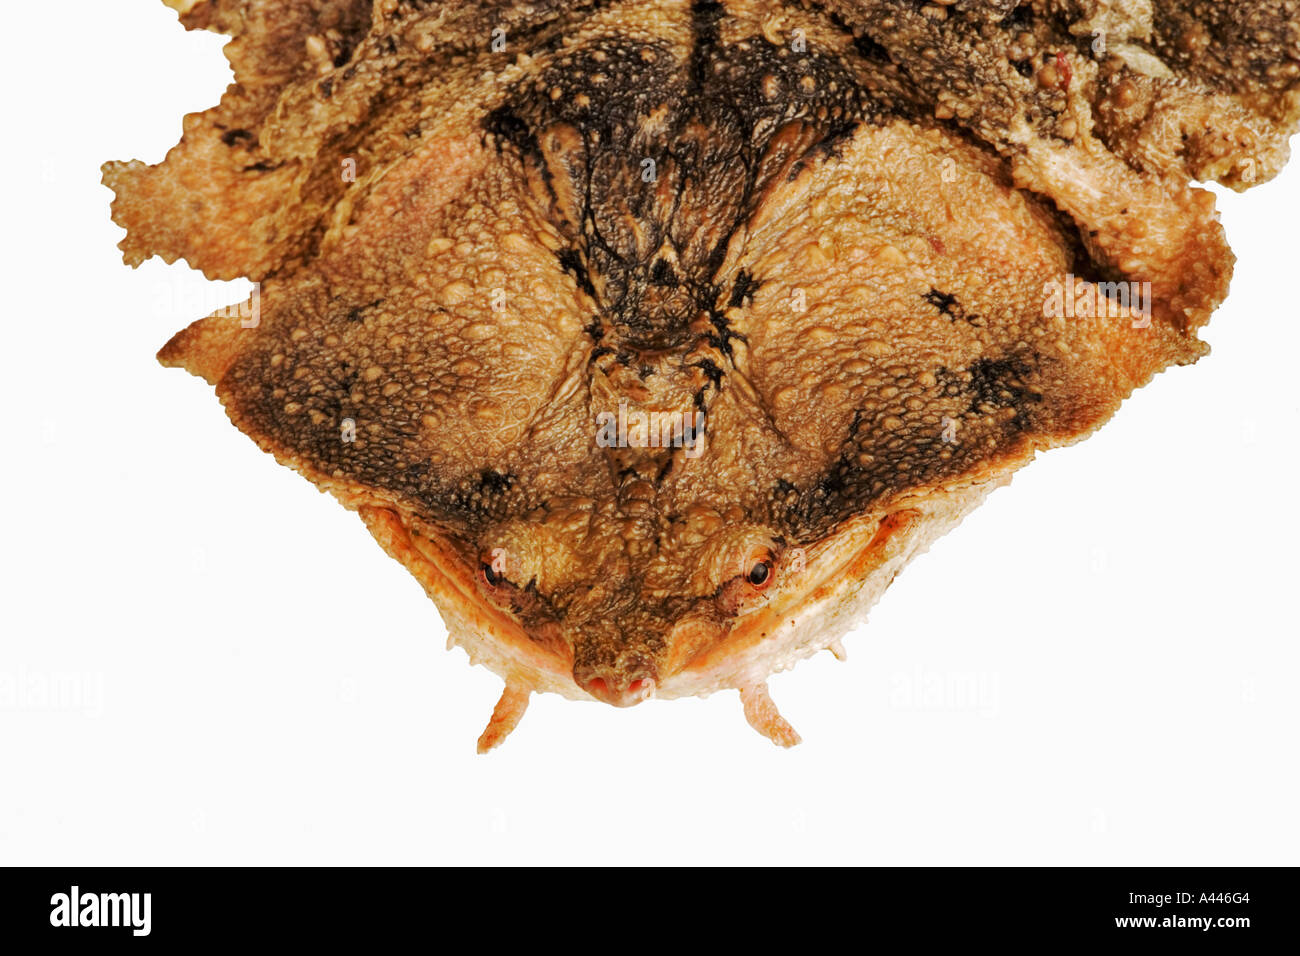 Matamata Chelus Fimbriatus lebt in schlammigen Körpermerkmale Beihilfe sein Überleben in der Natur. Vertrieb Süd-Amerika Stockfoto